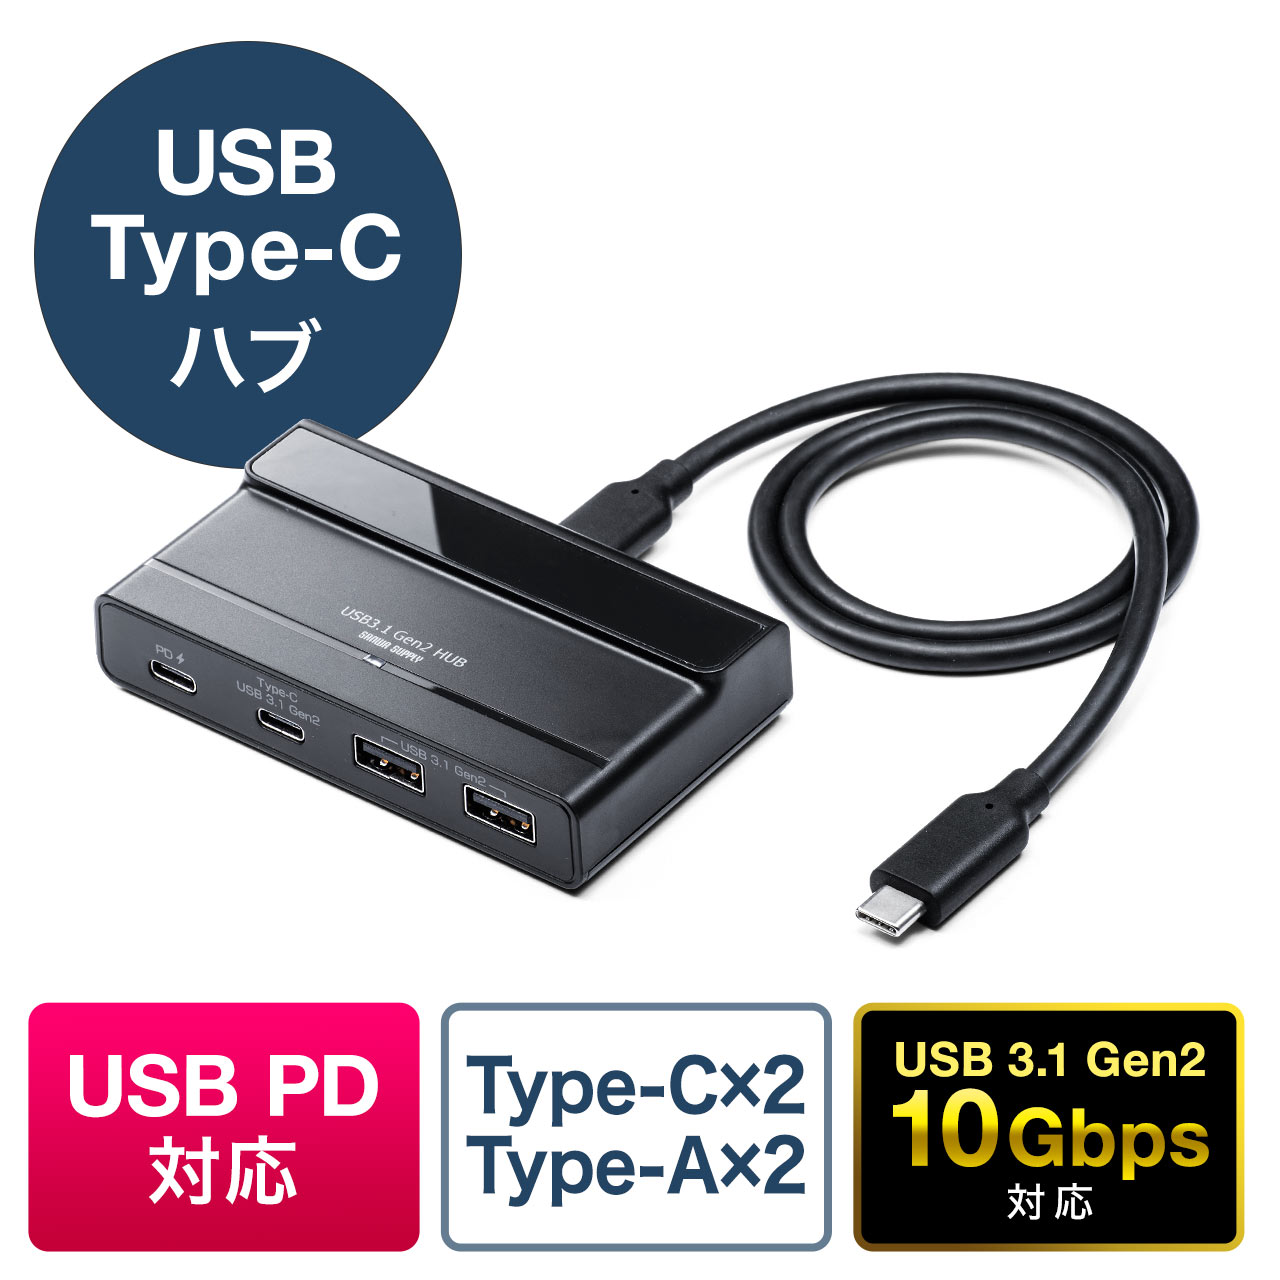 USBハブ USB3.0 ハブ 4ポート USB ハブ usb拡張ハブ 高速ハブ バスパワー ケーブ